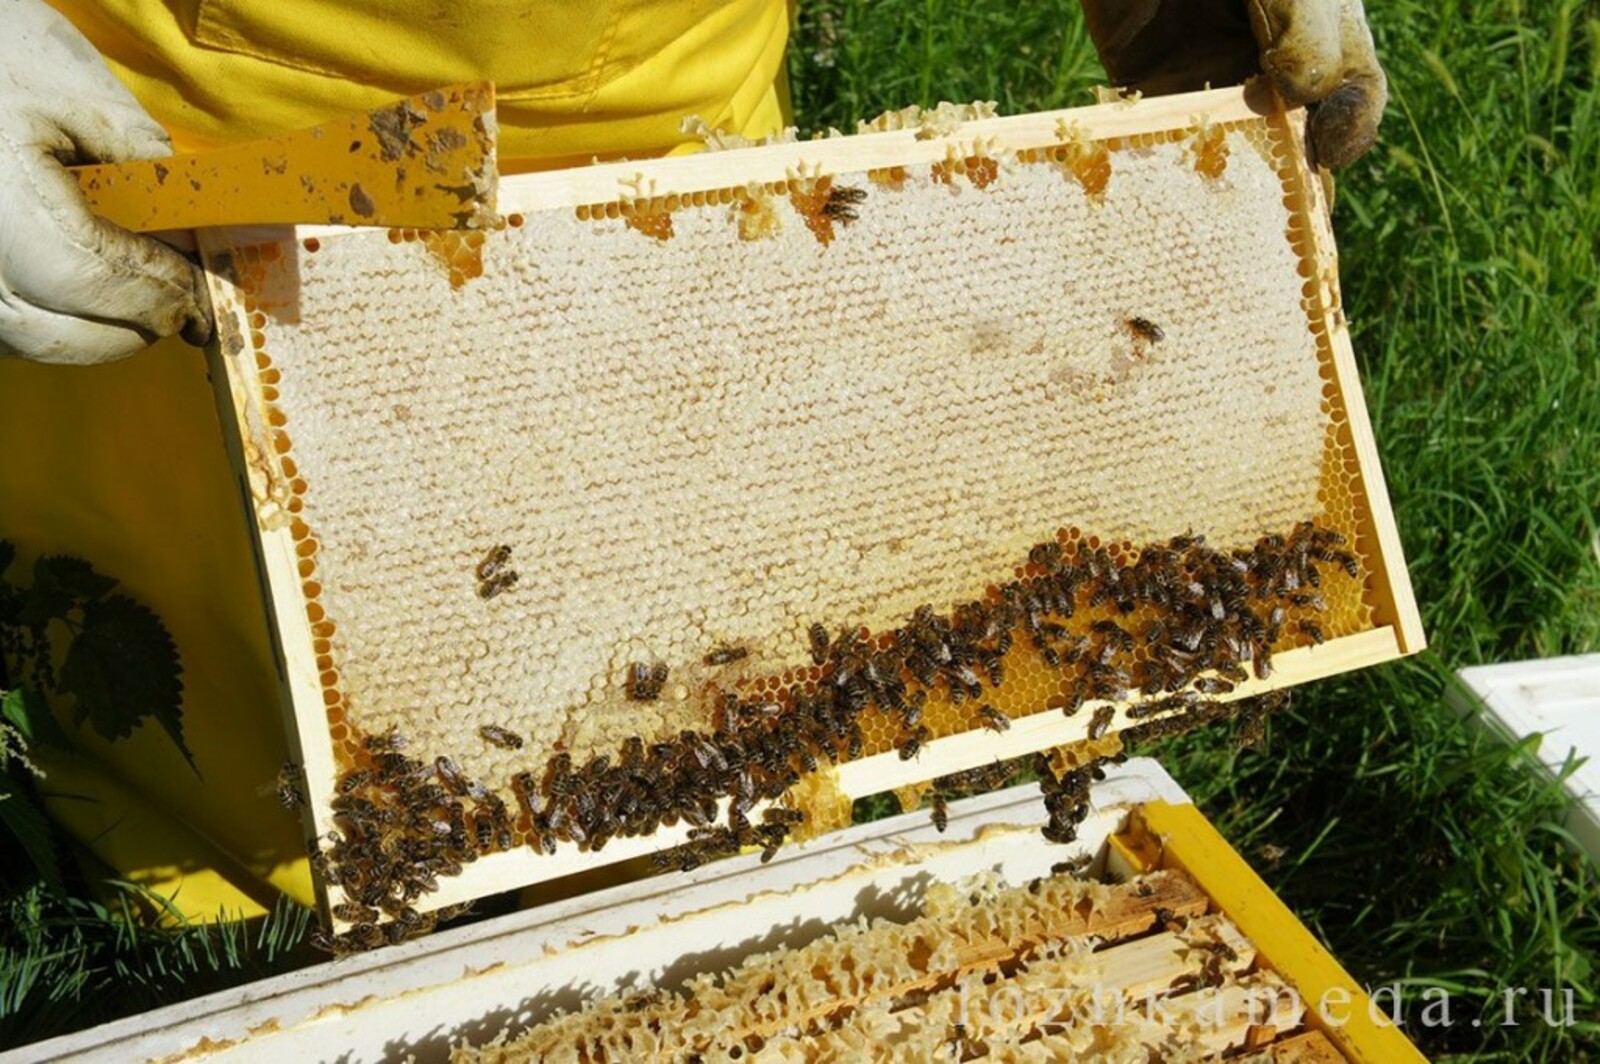 Купить пчелосемьи в белгородской области. Улей на пасеке. Пчела на сотах. Пчелы в улье. Рамки с сотами для ульев.